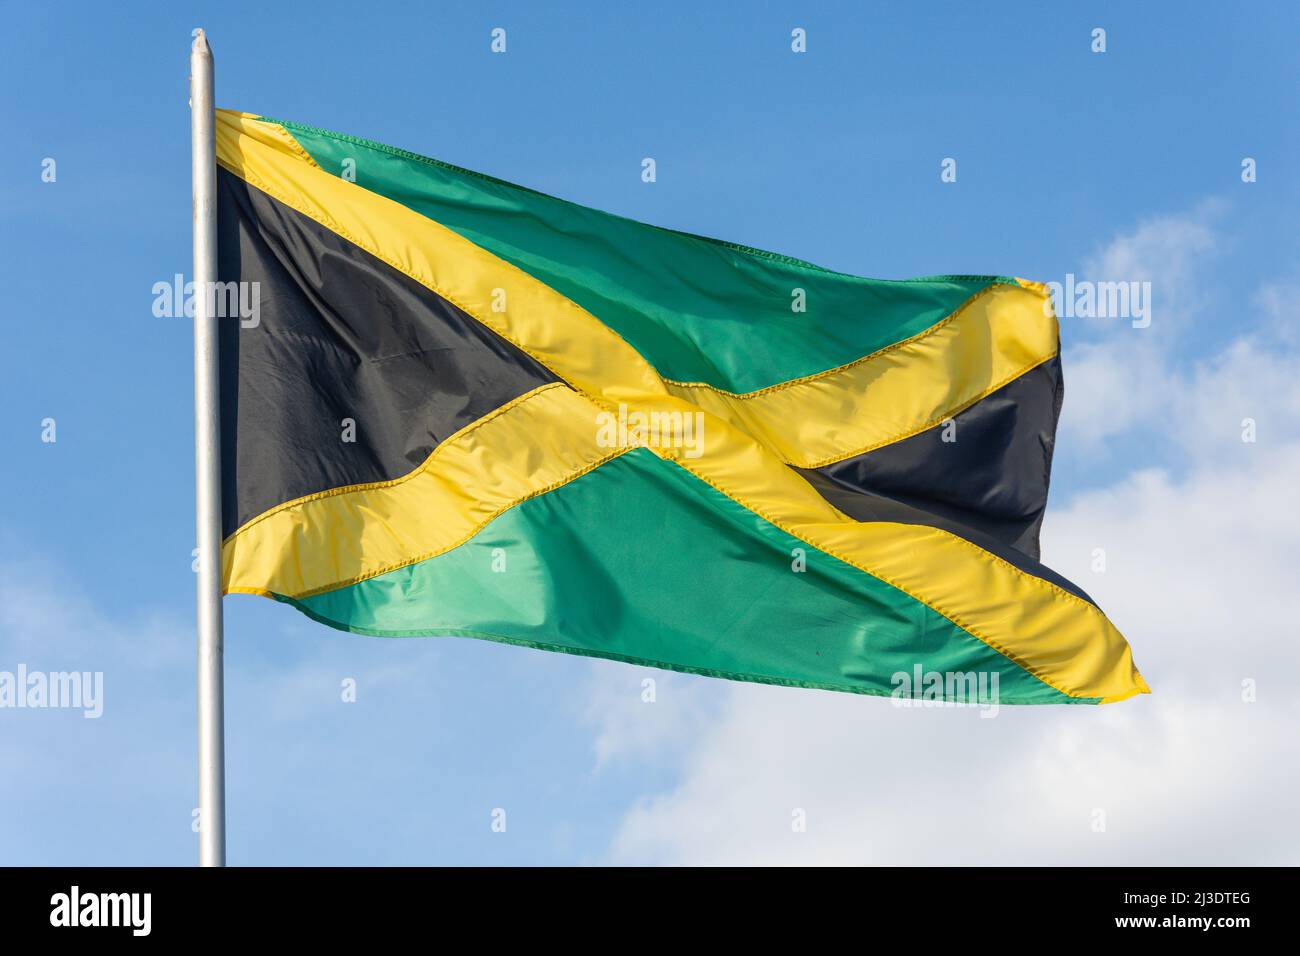 Drapeau national jamaïcain, Kingston, Jamaïque, grandes Antilles, Caraïbes Banque D'Images